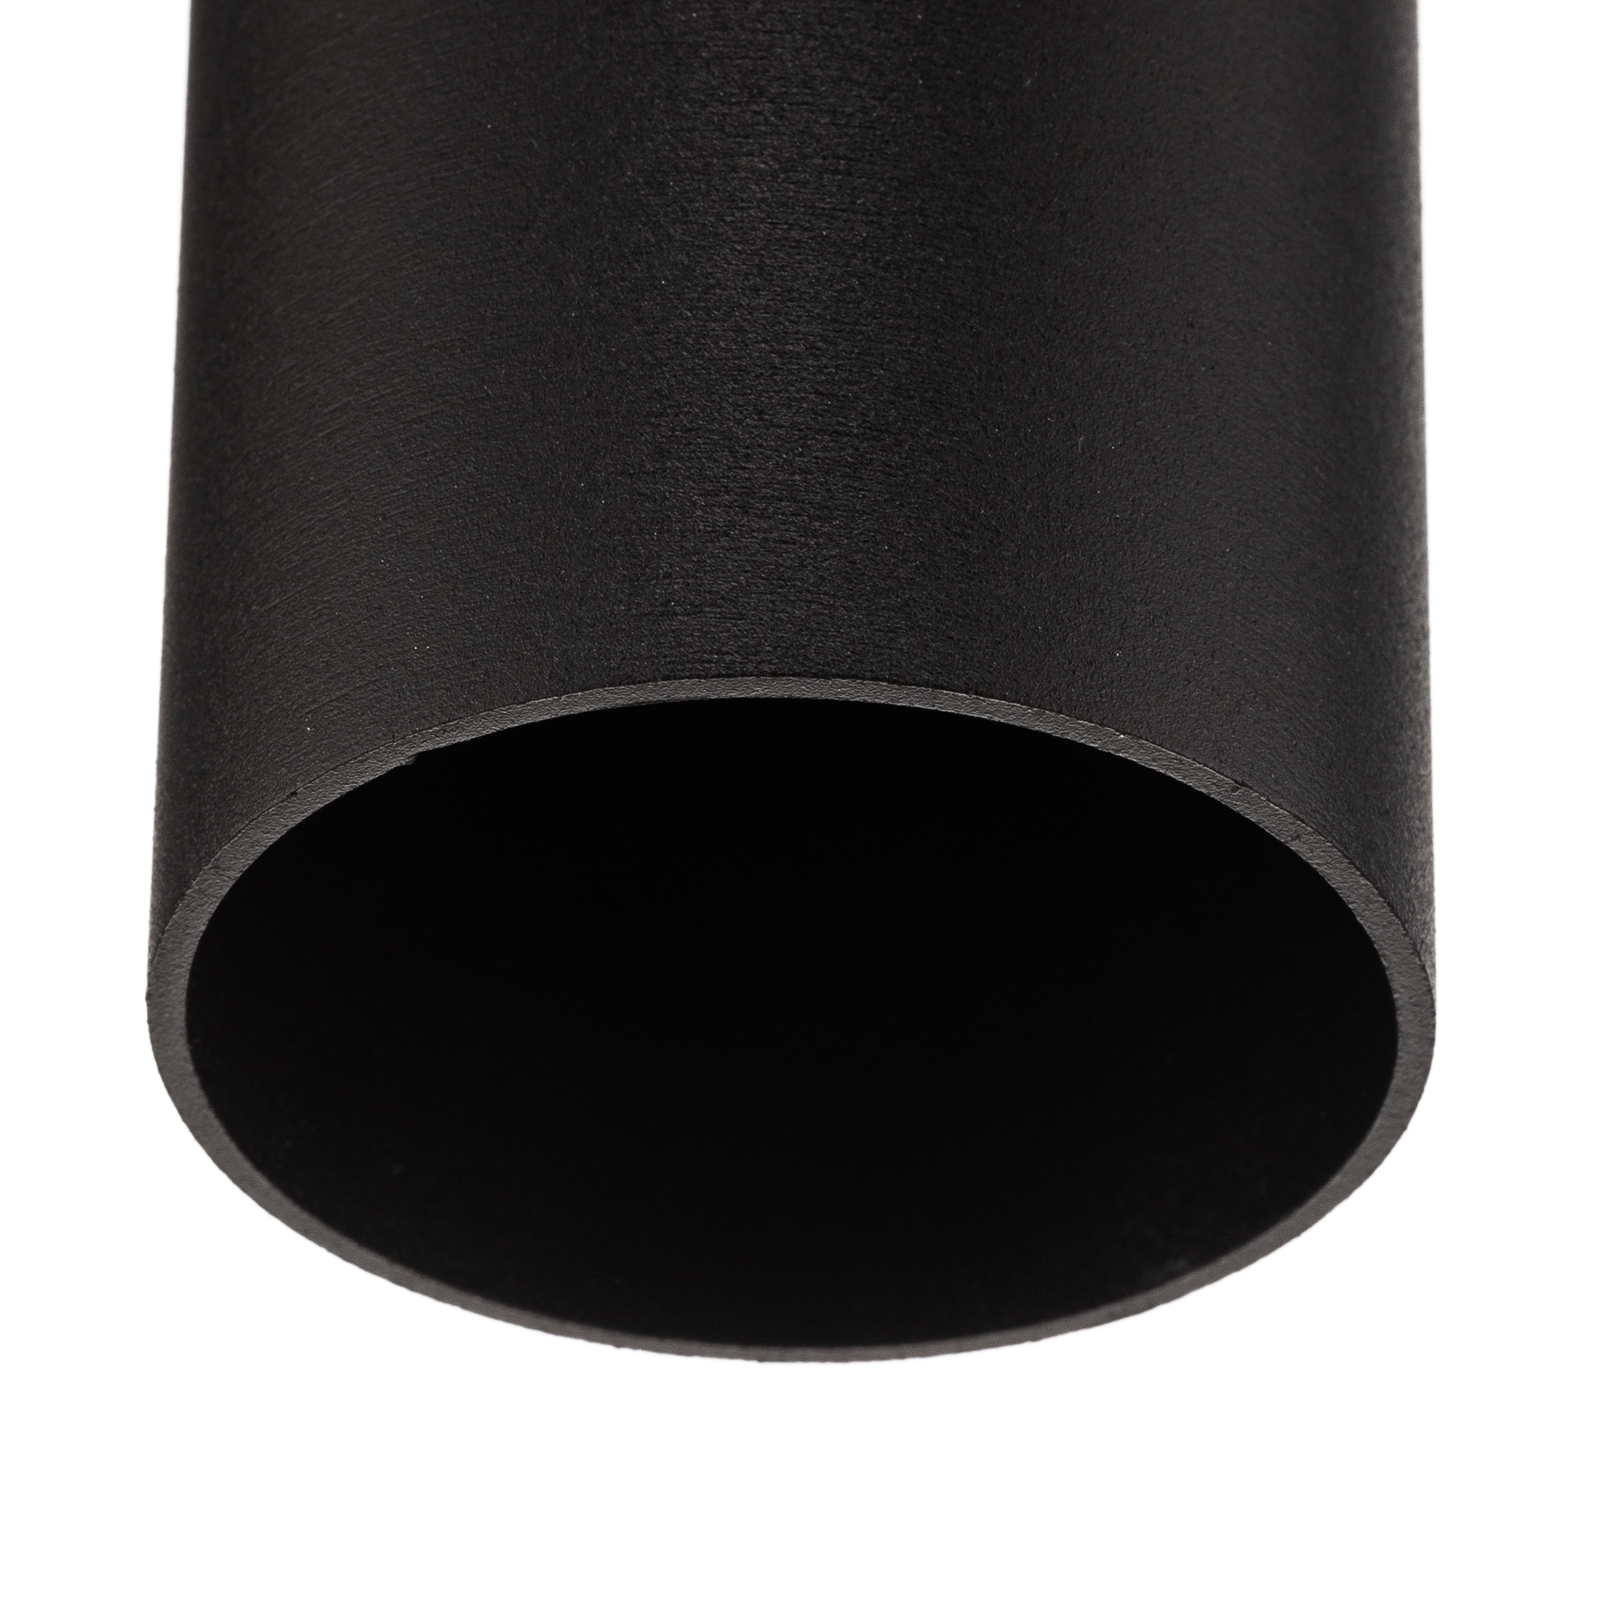 Tube loftlampe i cylinderform, sort